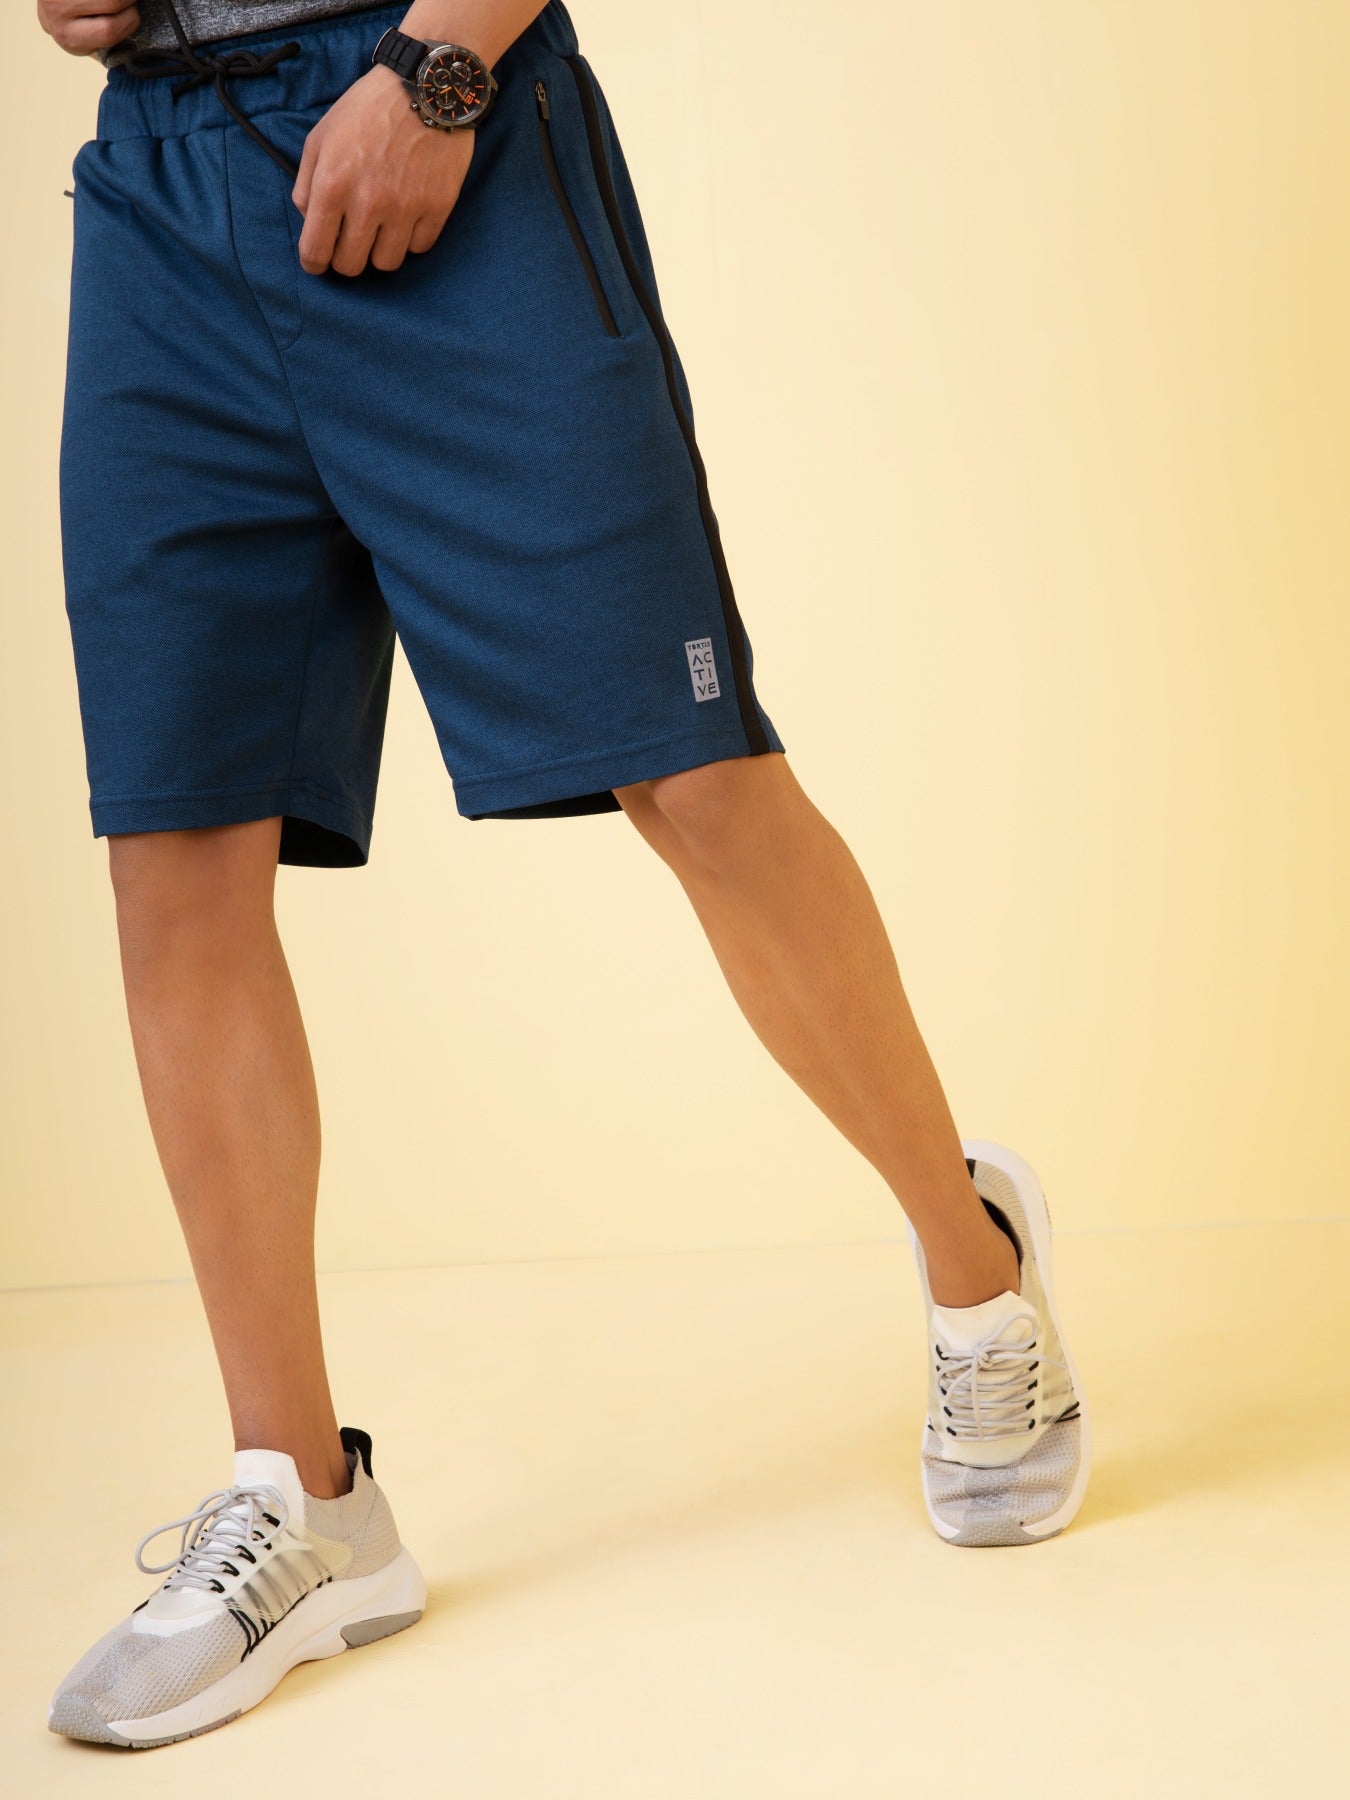 Teal Blue Regular Fit Sports Short For Men